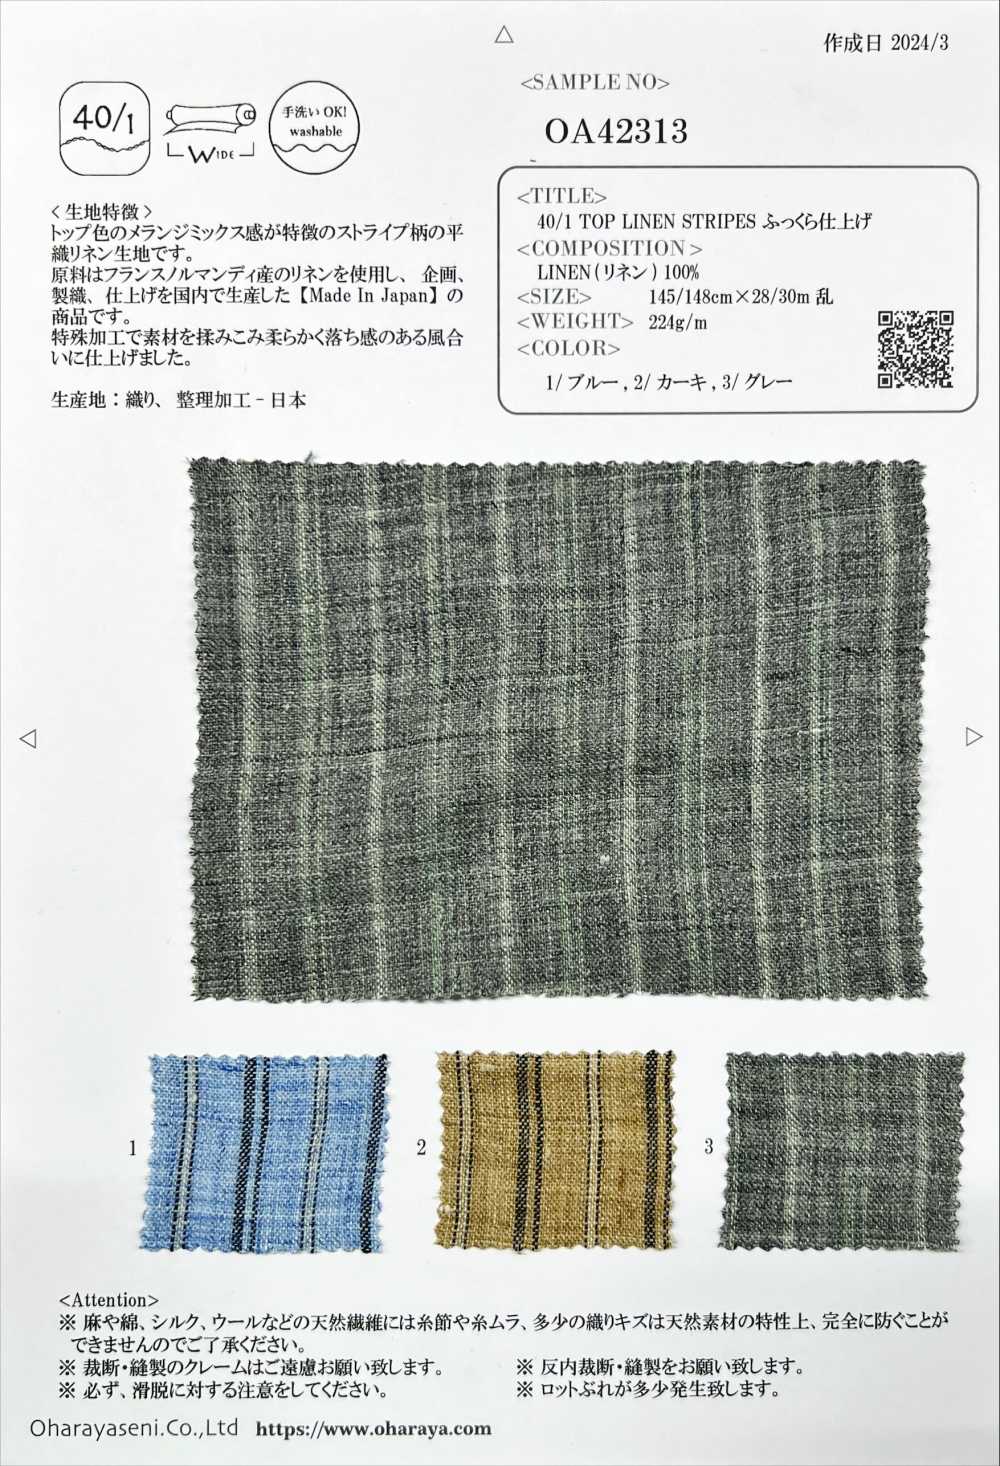 OA42313 40/1 TOP LEINEN STREIFEN Flauschige Oberfläche[Textilgewebe] Oharayaseni